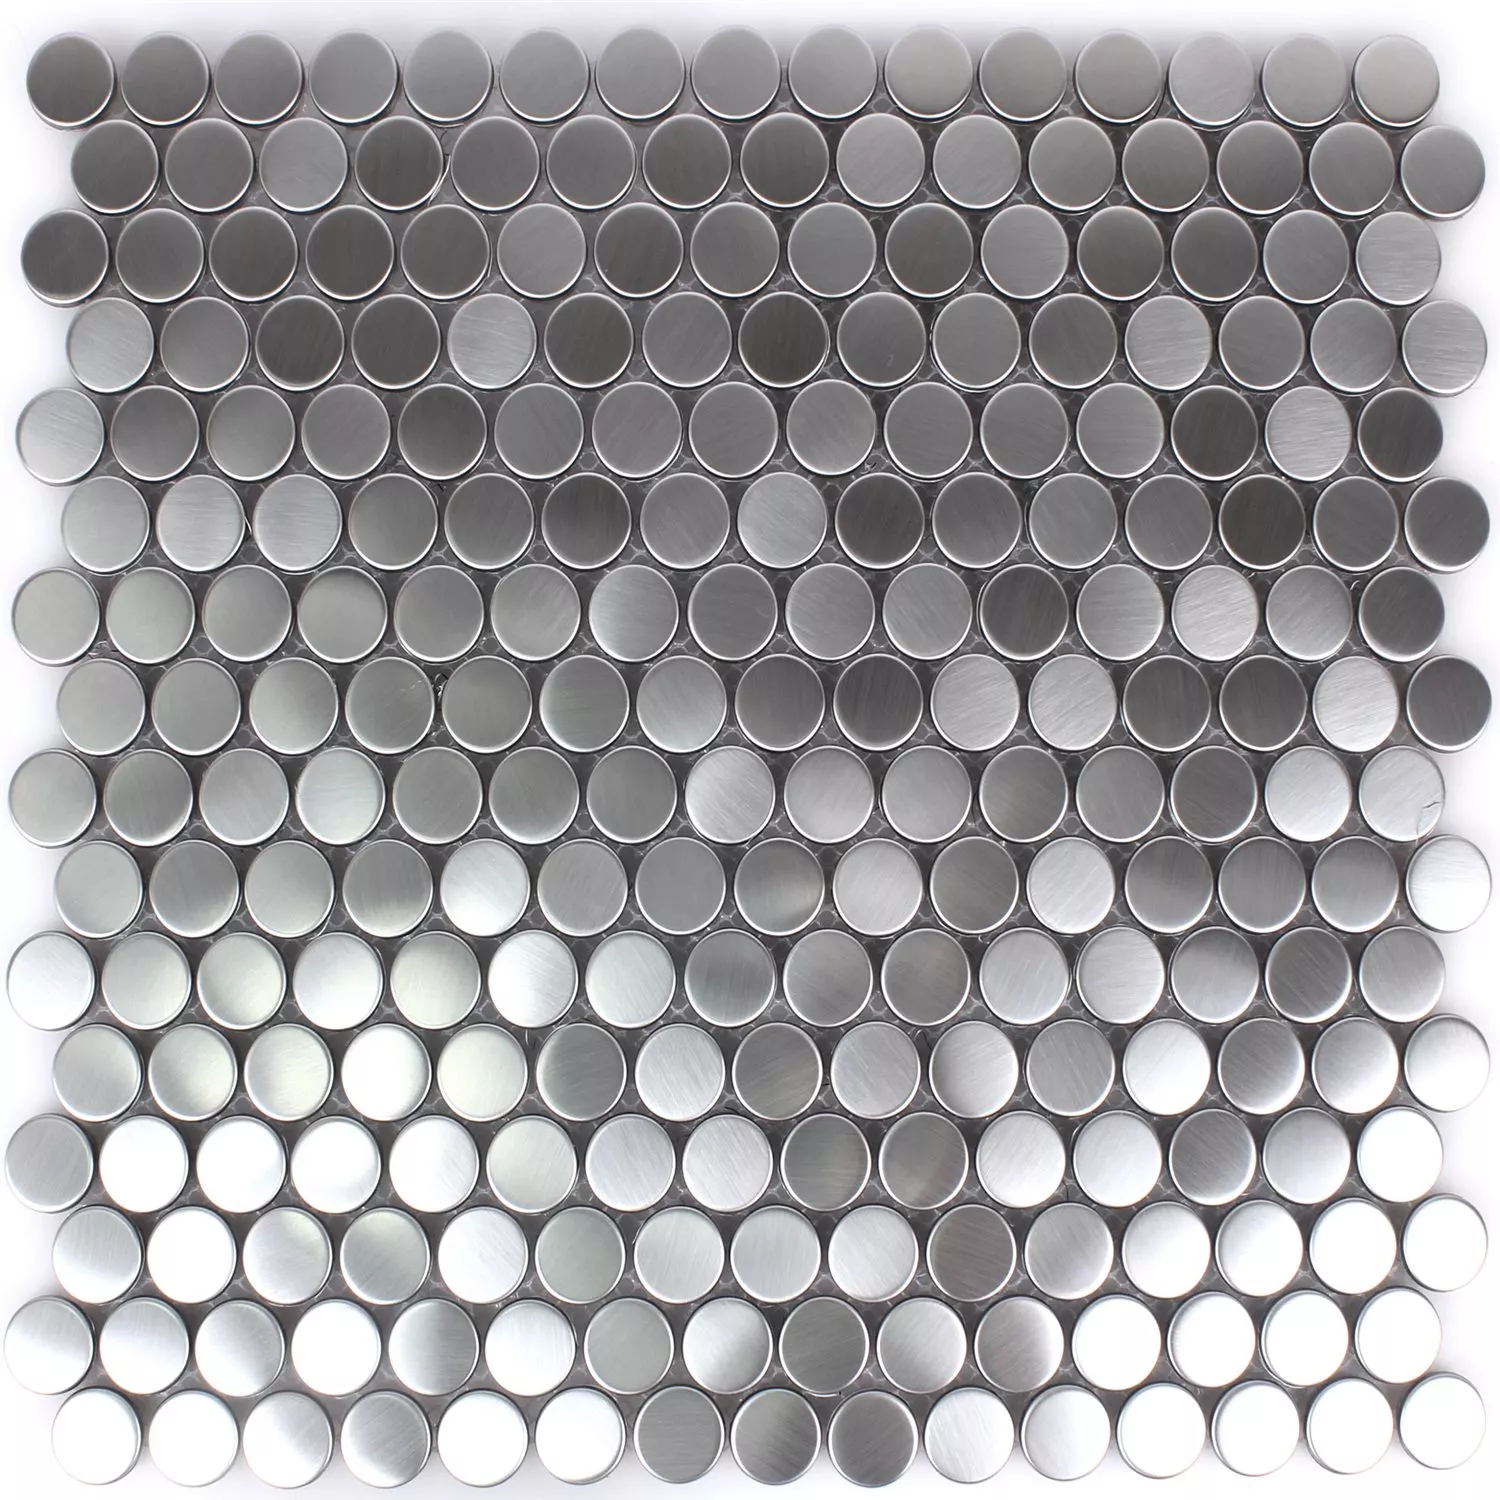 Mosaic Tiles Stainless Steel Celeus Silver Round